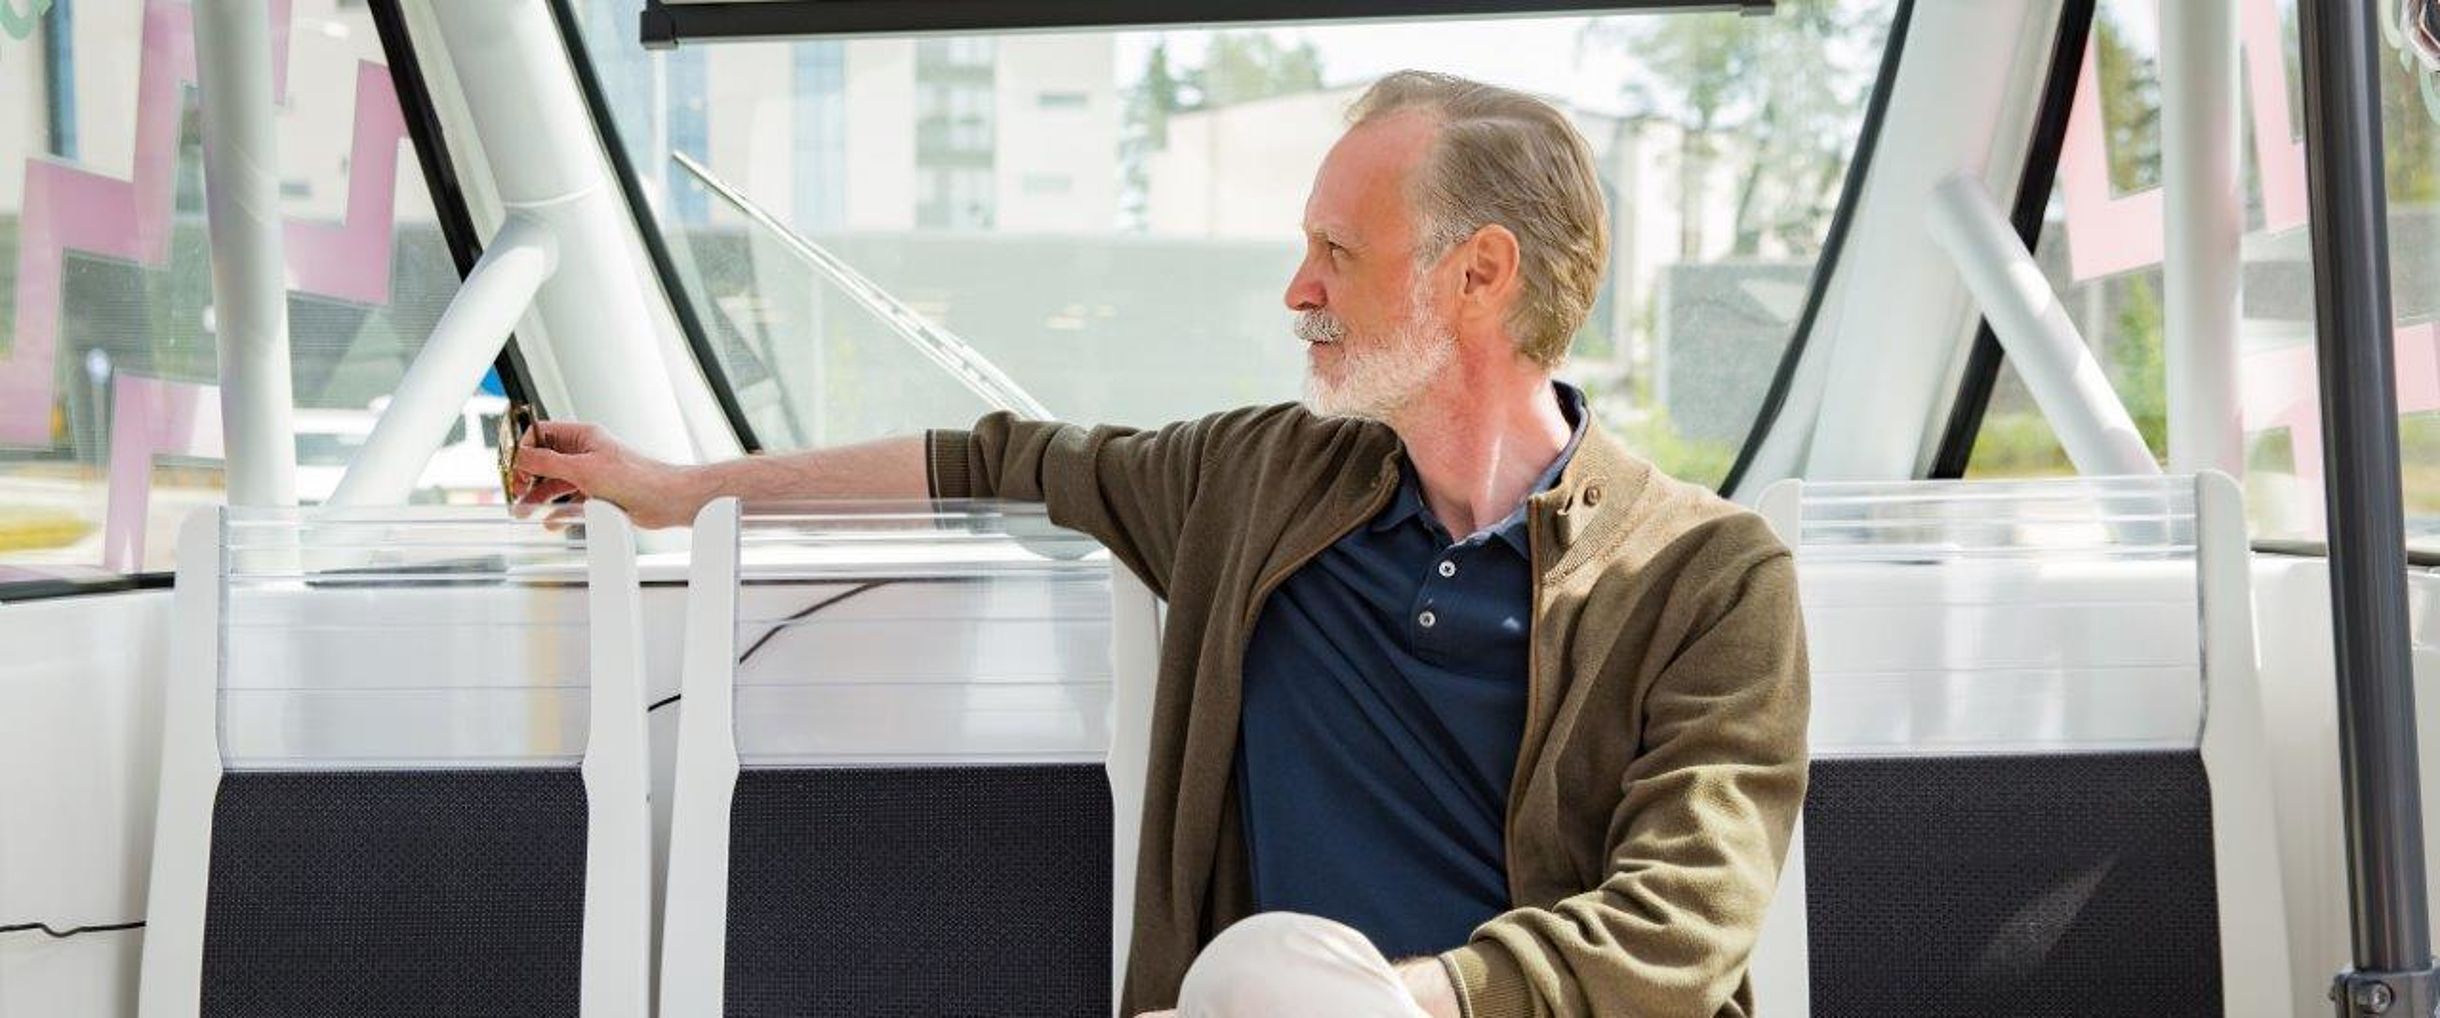 elderly gentleman sitting in a self-propelled bus